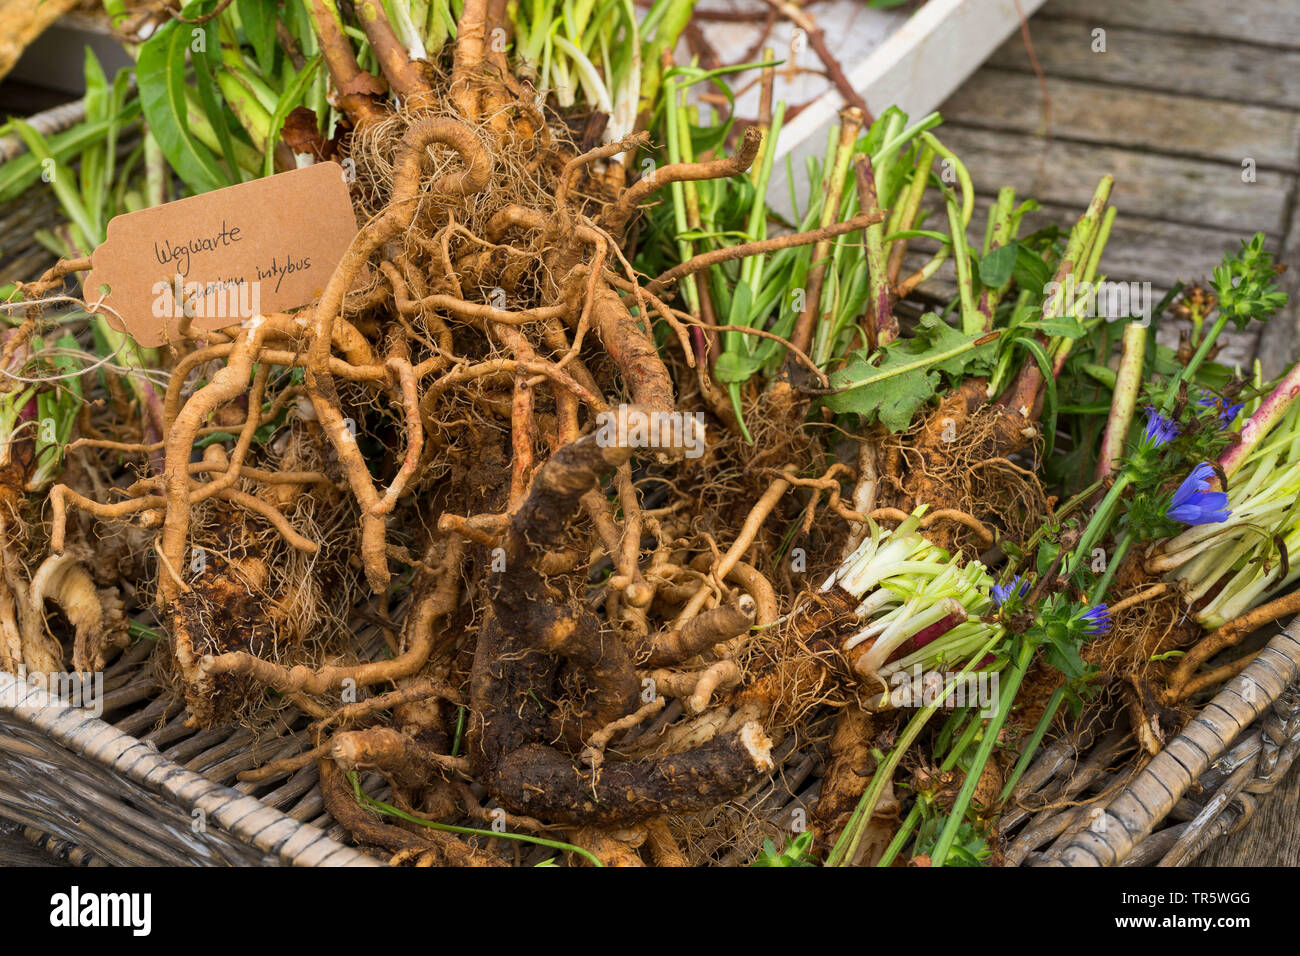 Les marins bleu commun, chicorée, wild succory (Cichorium intybus), racines avec étiquette, Allemagne Banque D'Images